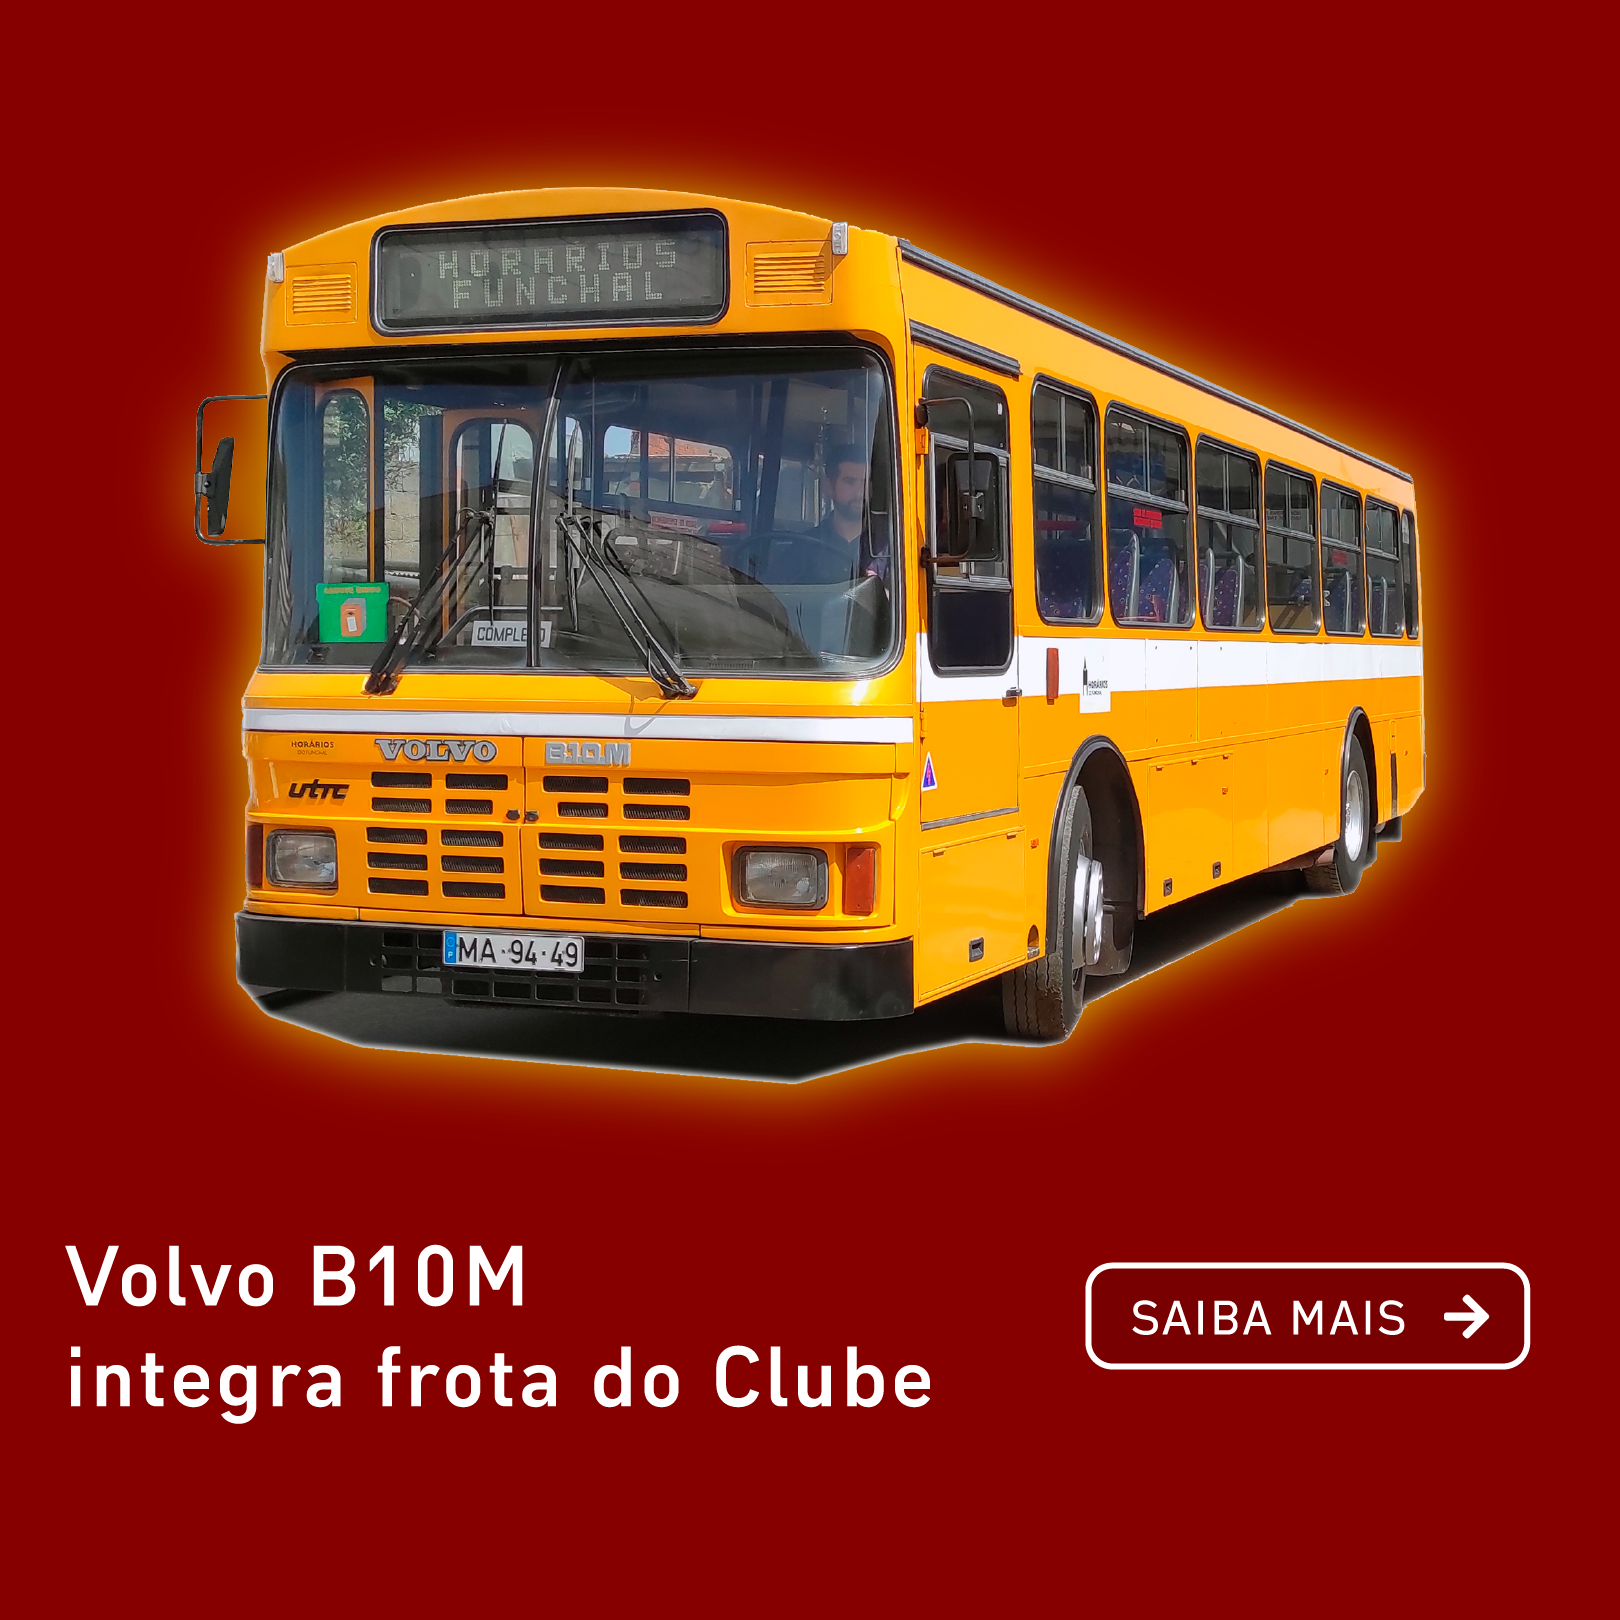 Volvo B10M da Horários do Funchal integra frota do Clube